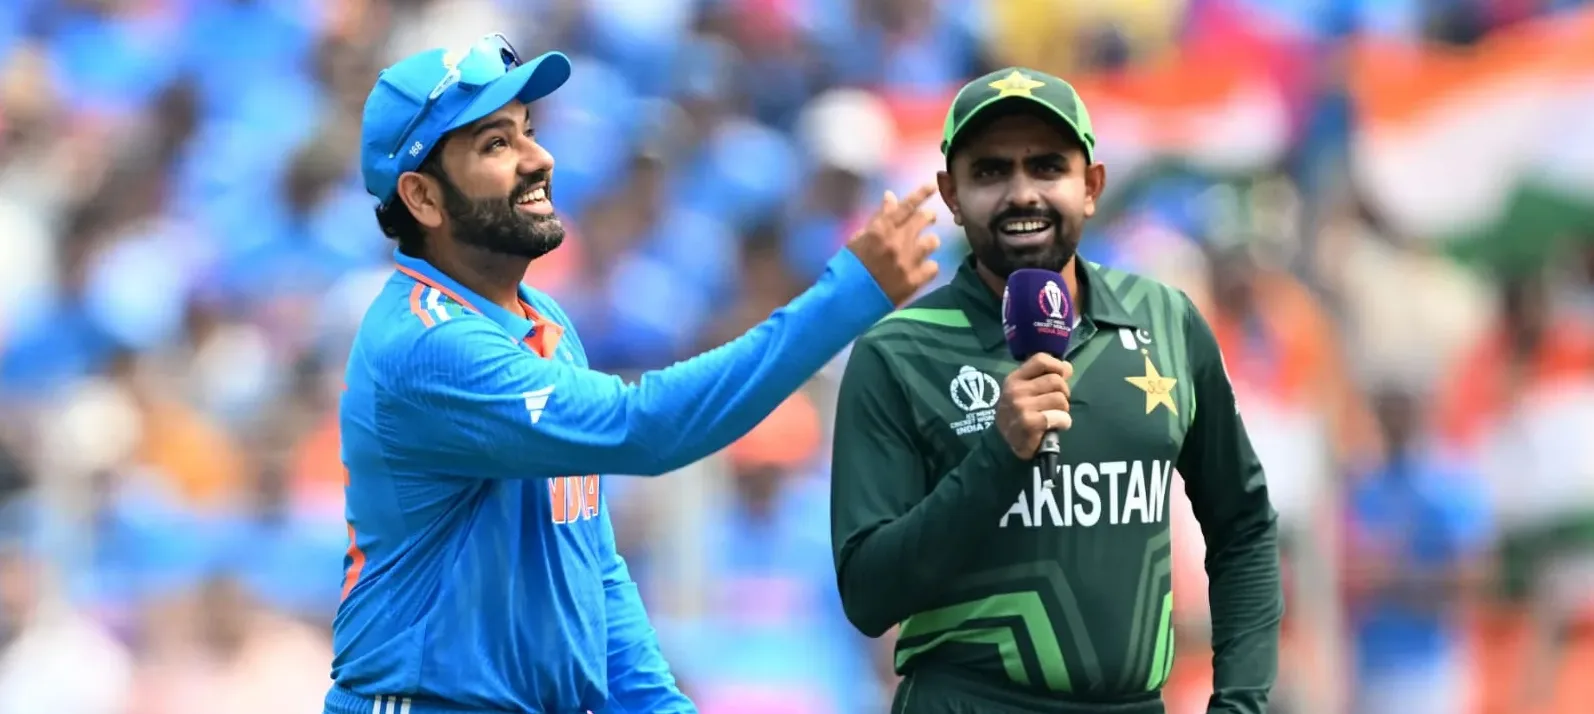 भारत ने पाकिस्तान को विश्वकप में 8वीं बार चखाया हार का स्वाद